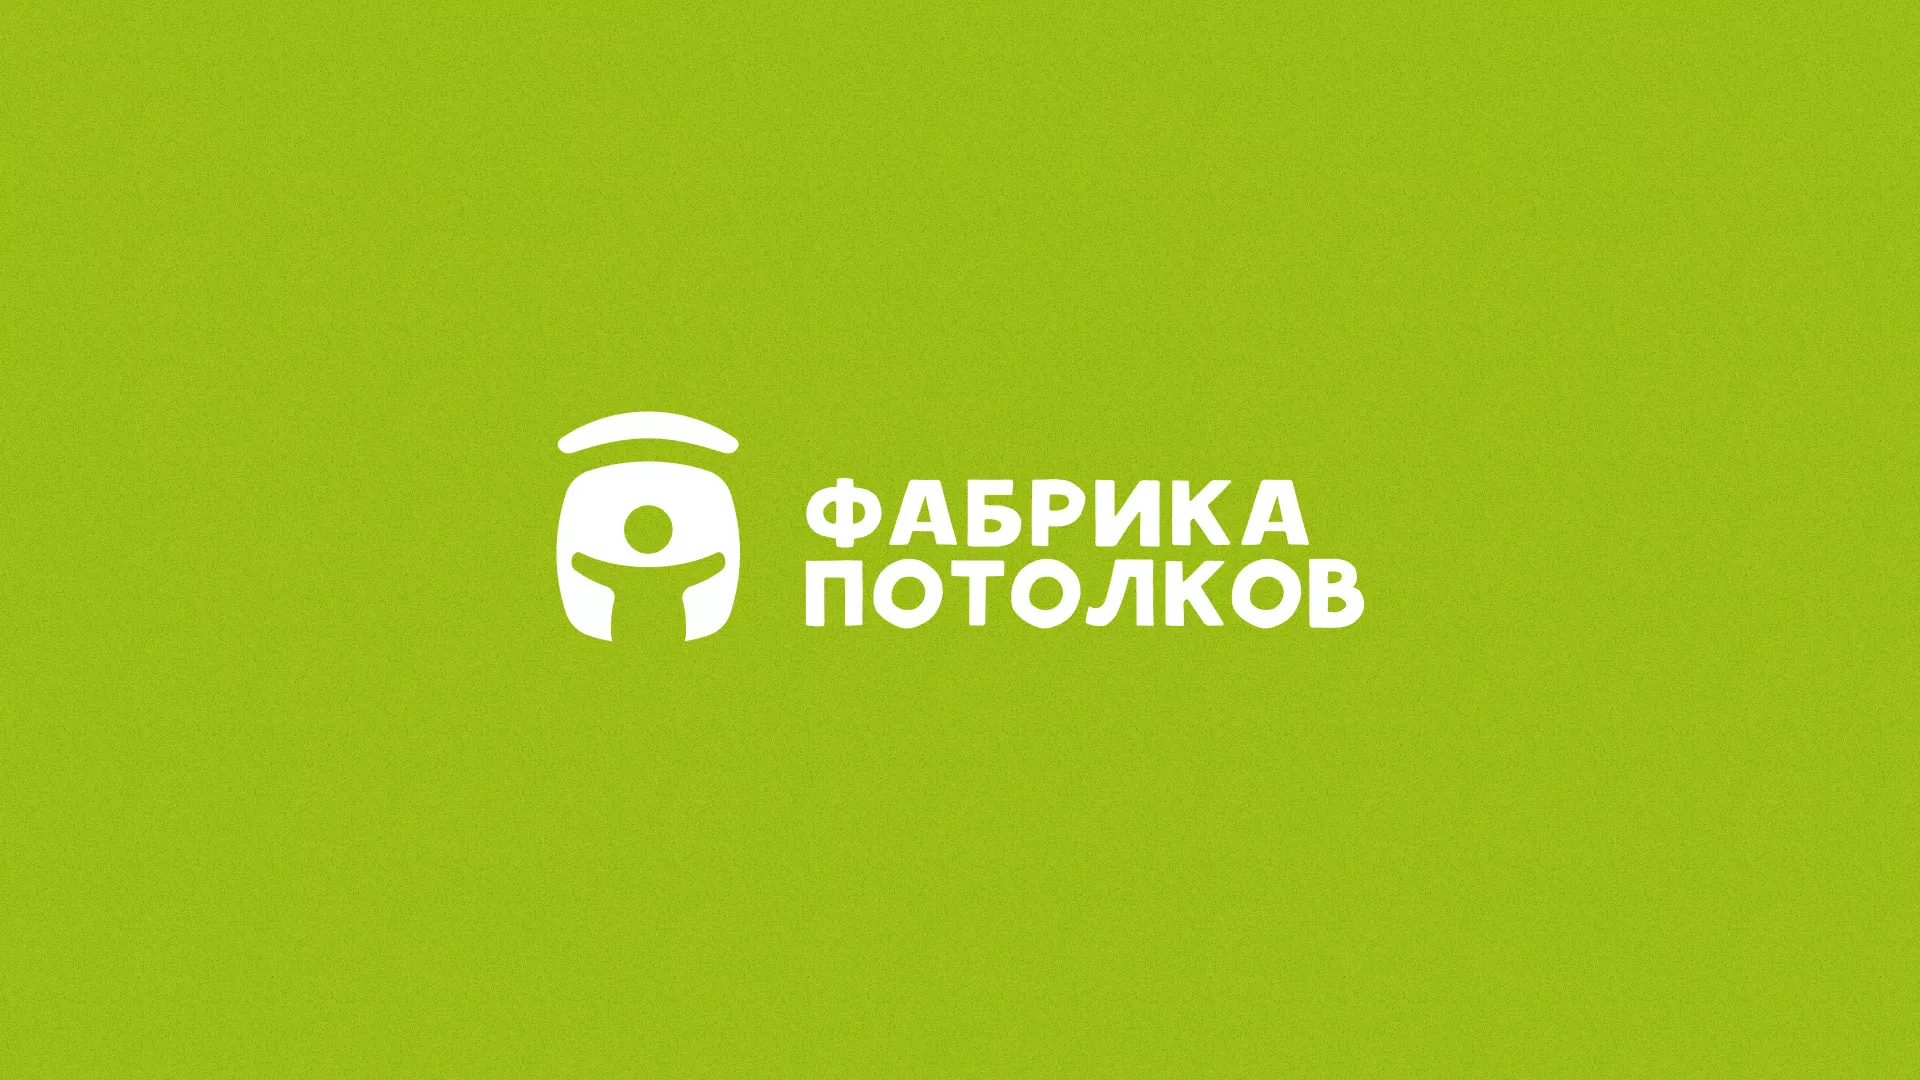 Разработка логотипа для производства натяжных потолков в Белокурихе